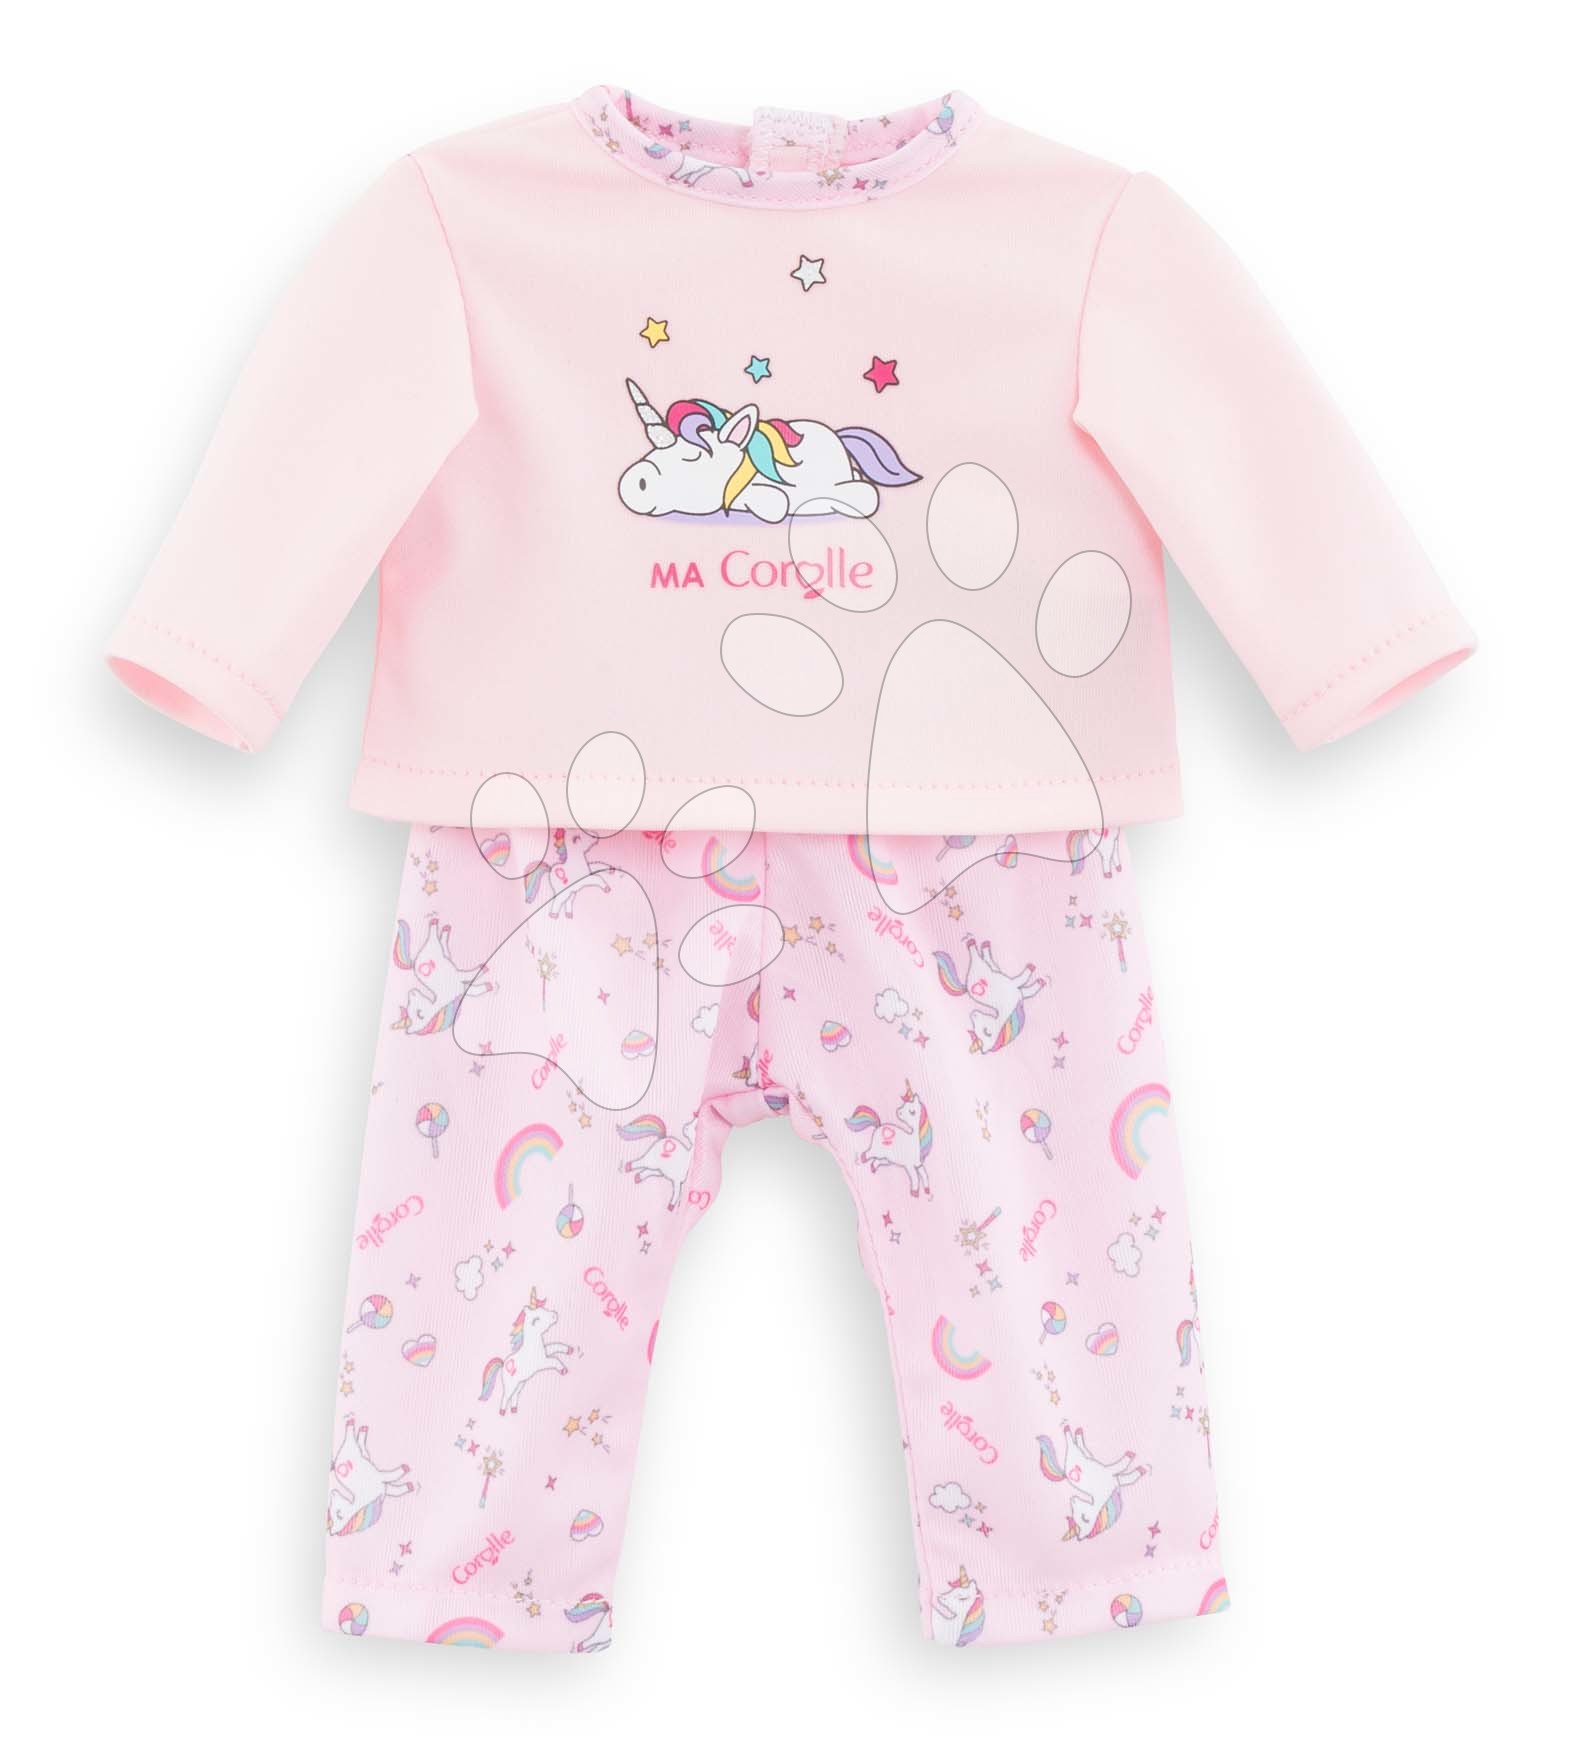 Oblečenie Pyjama Unicorn Ma Corolle pre 36 cm bábiku od 4 rokov